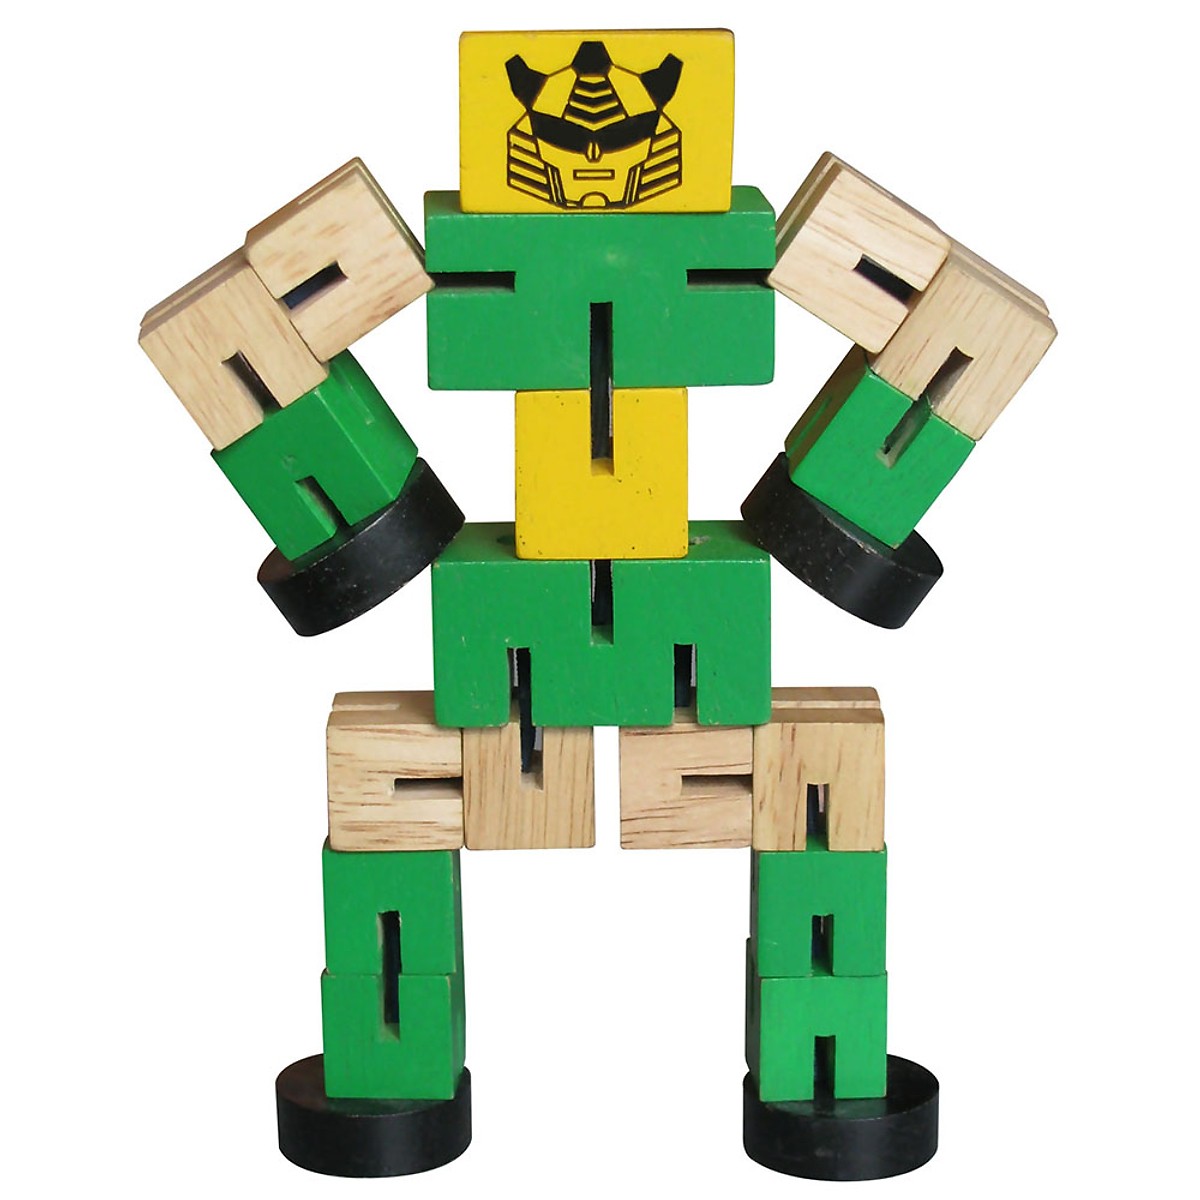 Luồn Thun Robo Mk - Đồ chơi gỗ